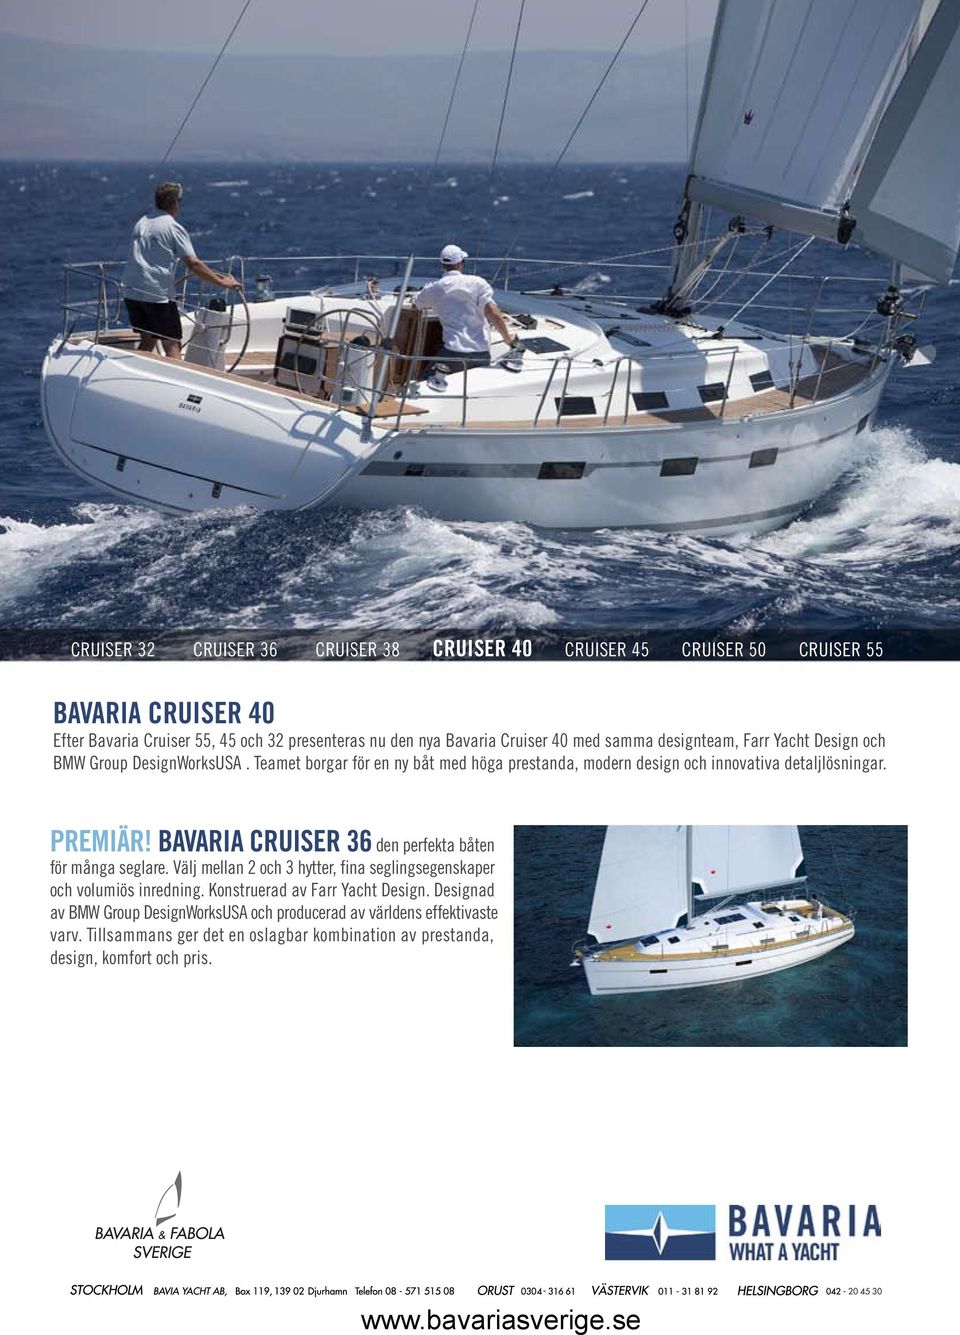 BAVARIA CRUISER 36 den perfekta båten för många seglare. Välj mellan 2 och 3 hytter, fina seglingsegenskaper och volumiös inredning. Konstruerad av Farr Yacht Design.